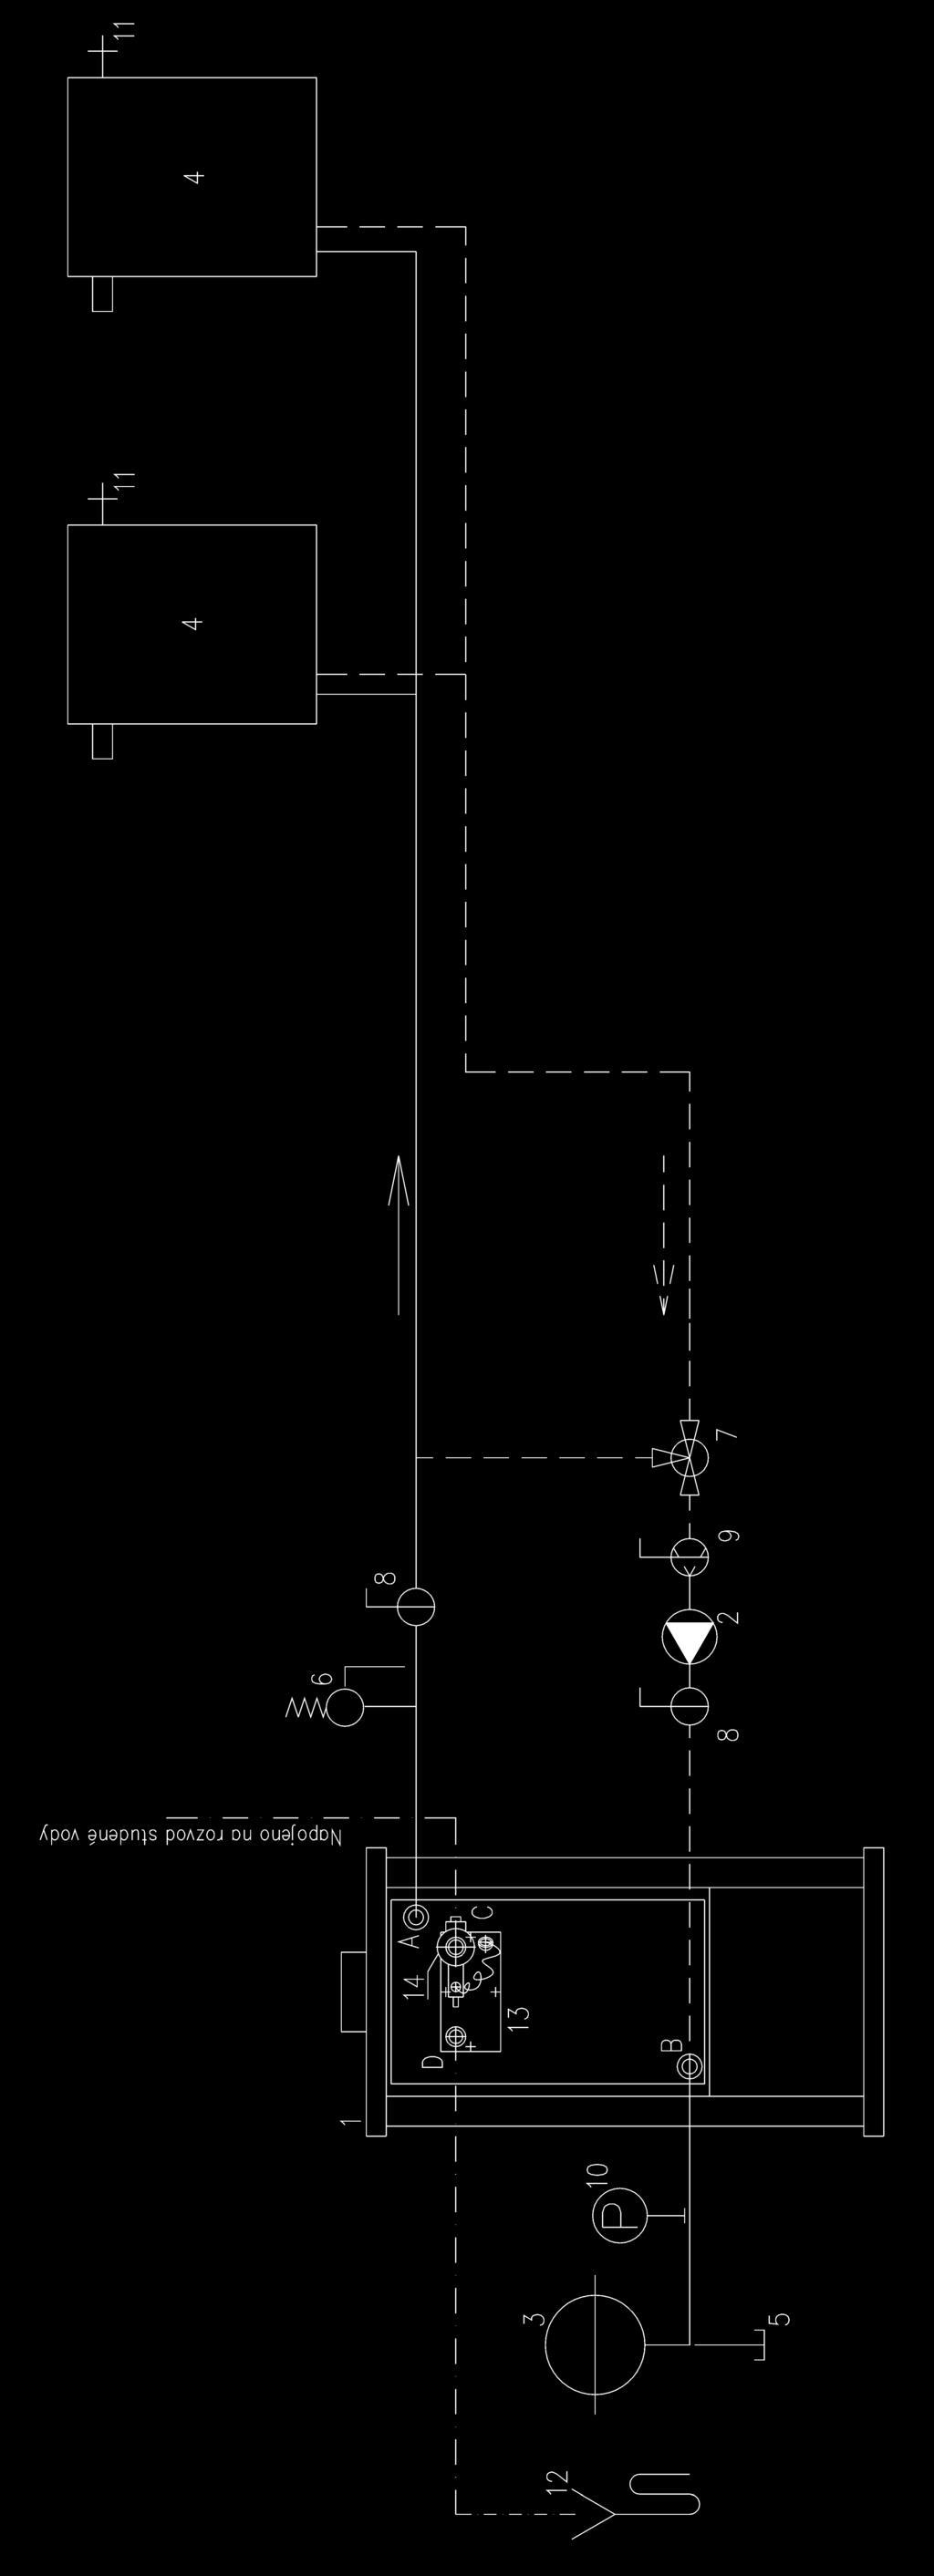 Informativní schéma otopné soustavy 1 Zabezpeèení proti pøehøátí pøi výpadku elektrické energie s použitím vychlazovacího výmìníku (smyèky).